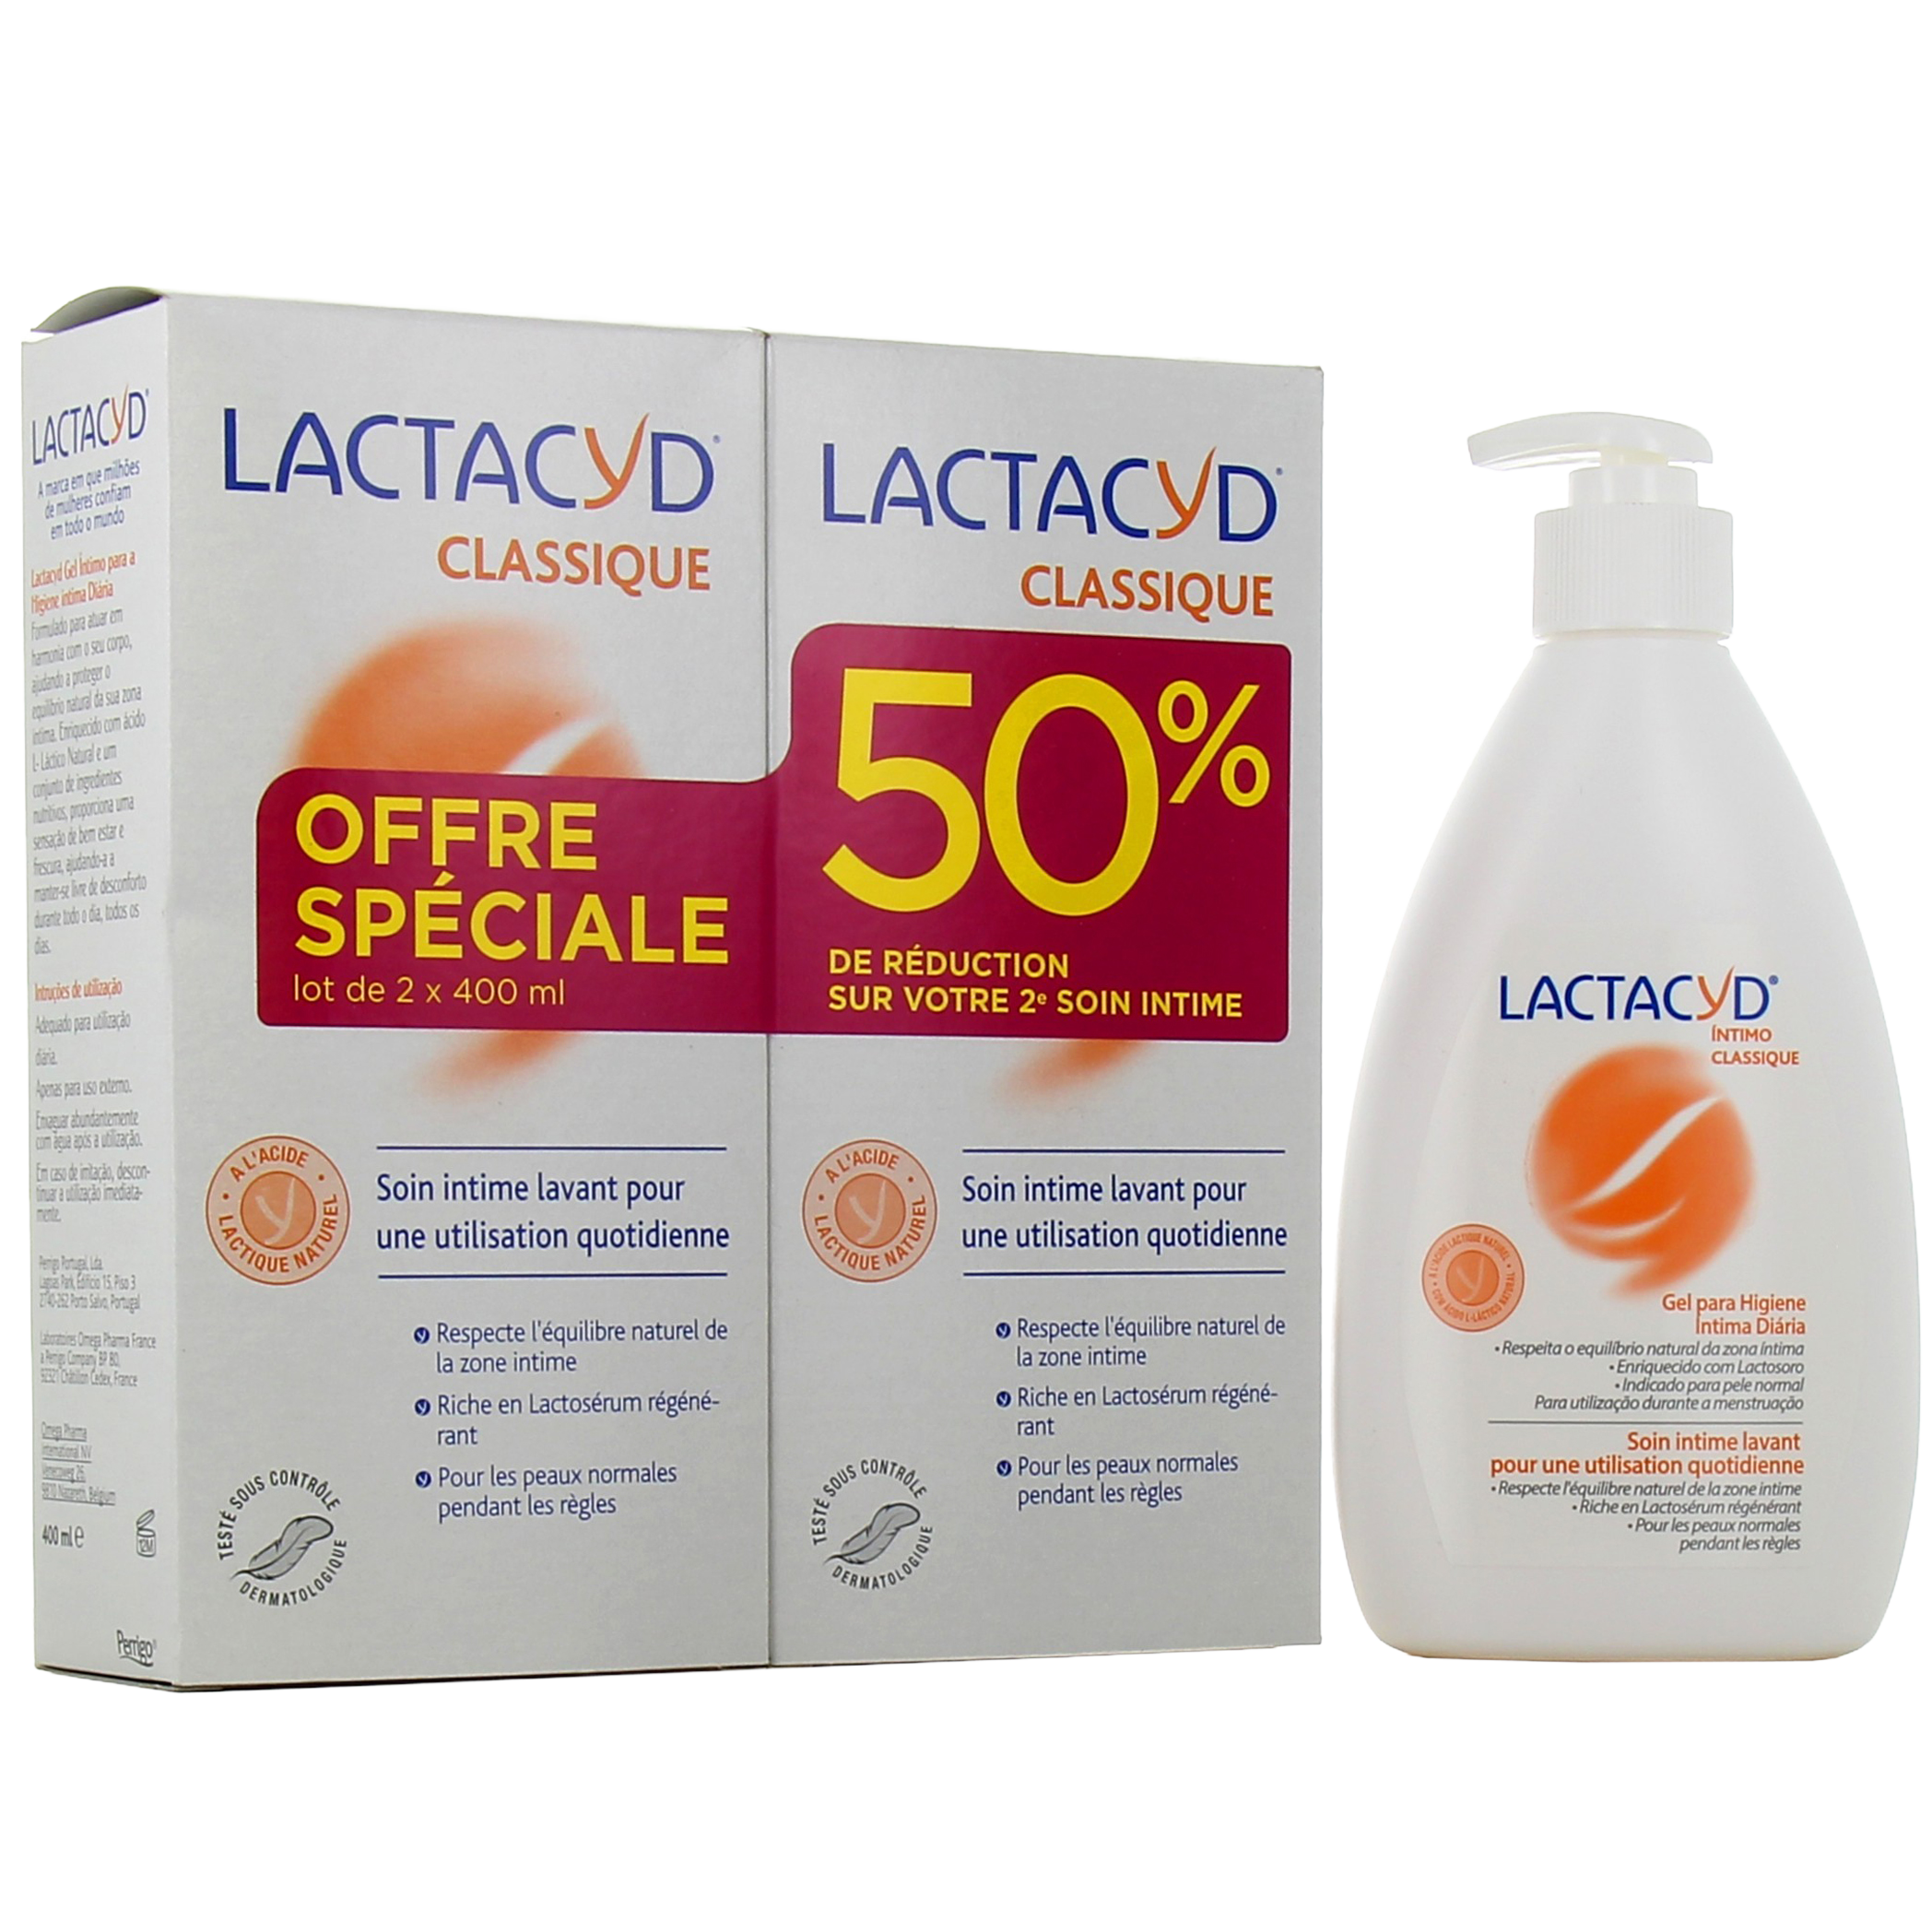 Lactacyd Soin Intime Lavant Doux 400ml